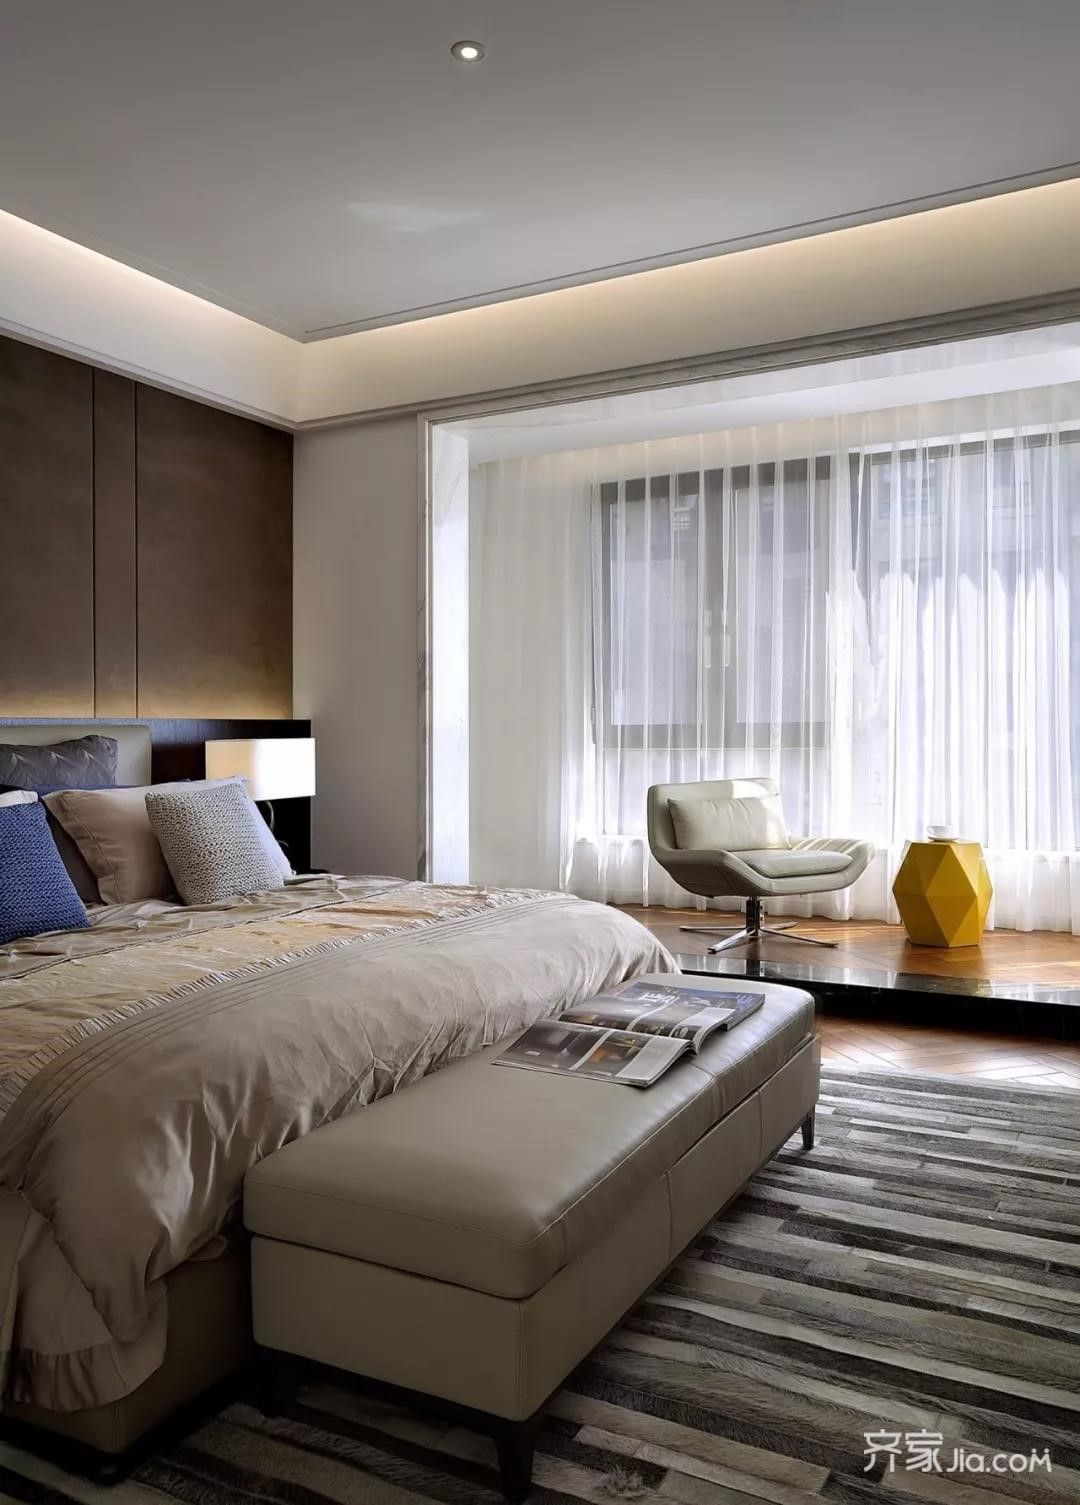 落地玻璃窗使卧室光线充足,木质地板的设计让人身心放松,营造出优雅